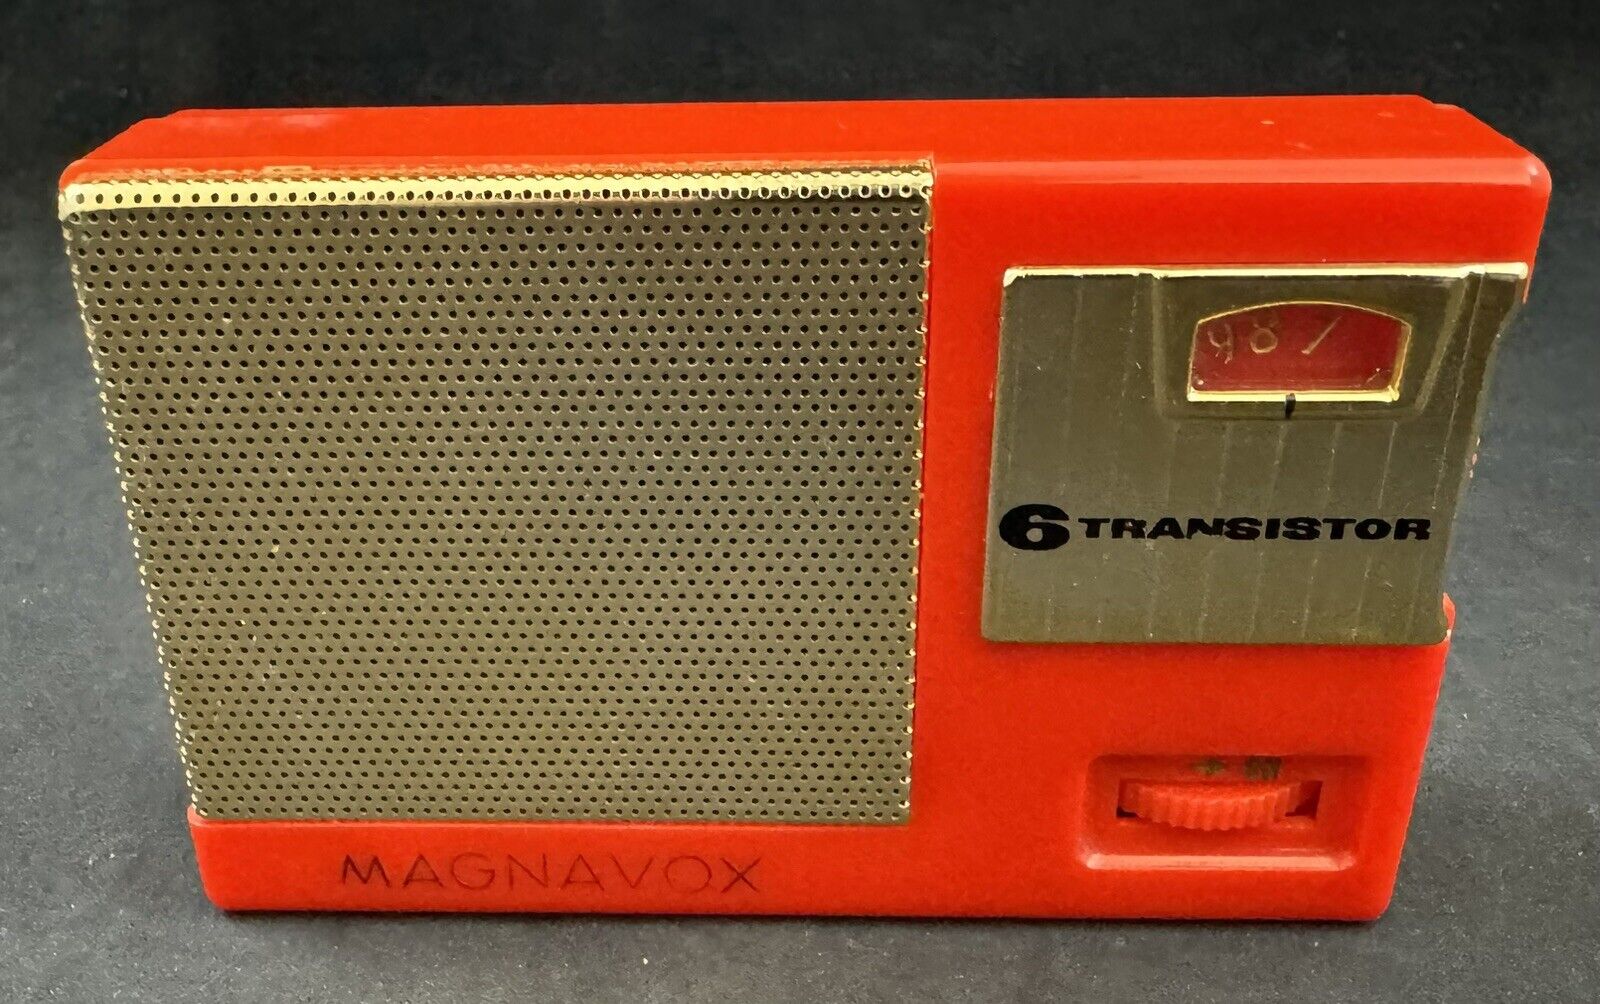 Vintage Magnavox AM-22 Transistor Radio w/ Cover Case